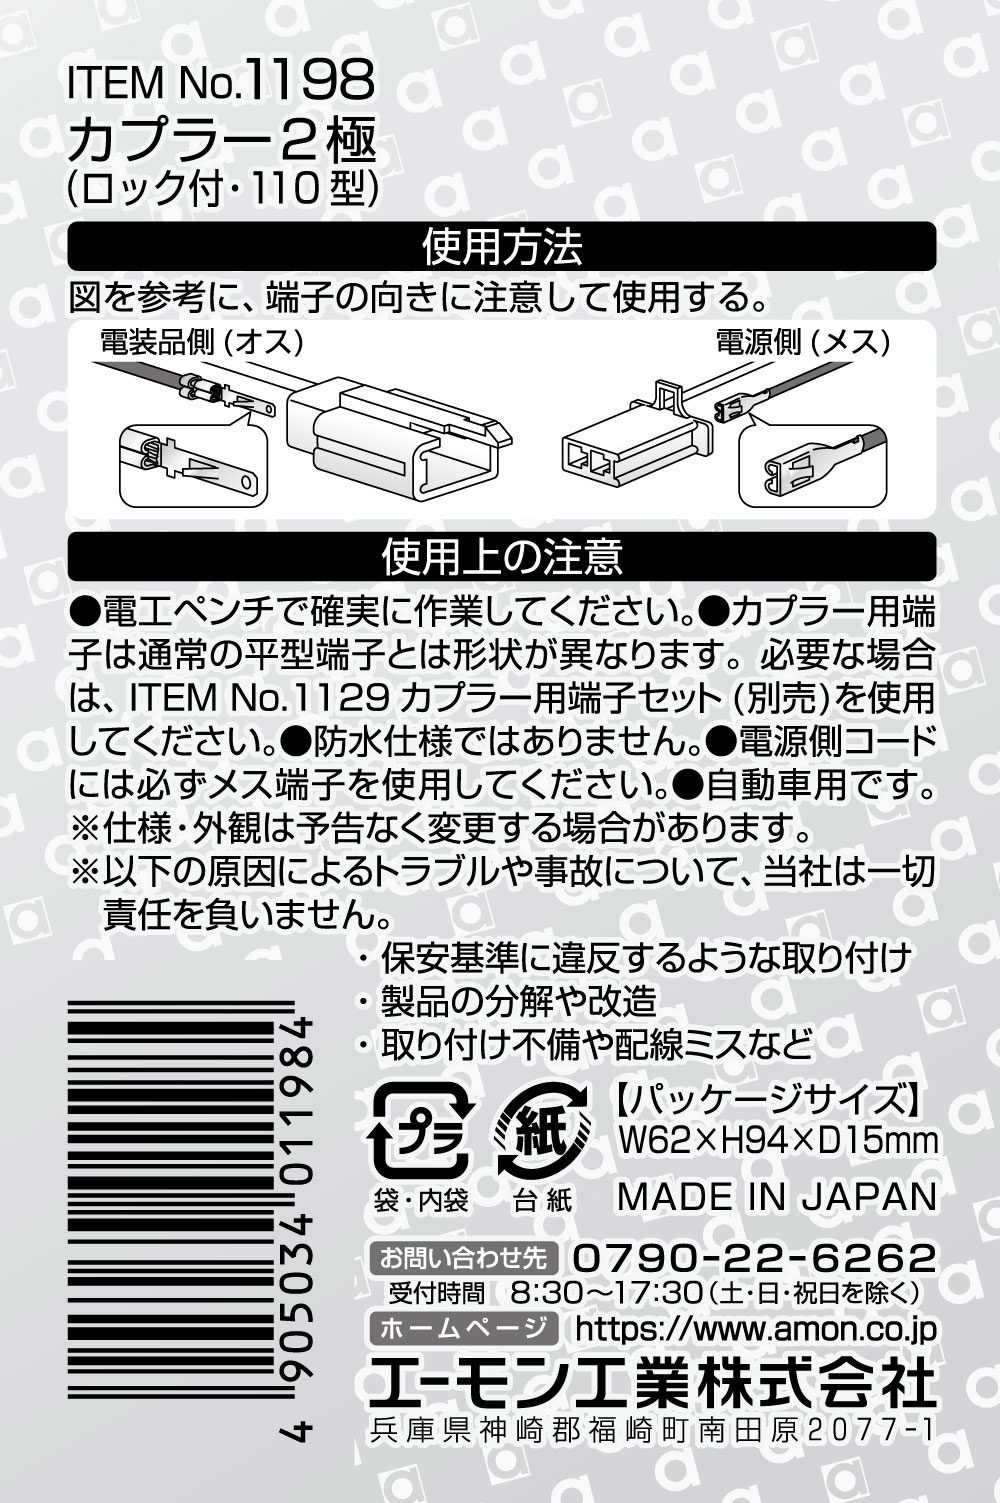 エーモン/[1198]カプラー2極(ロック付・110型)/製品詳細ページ